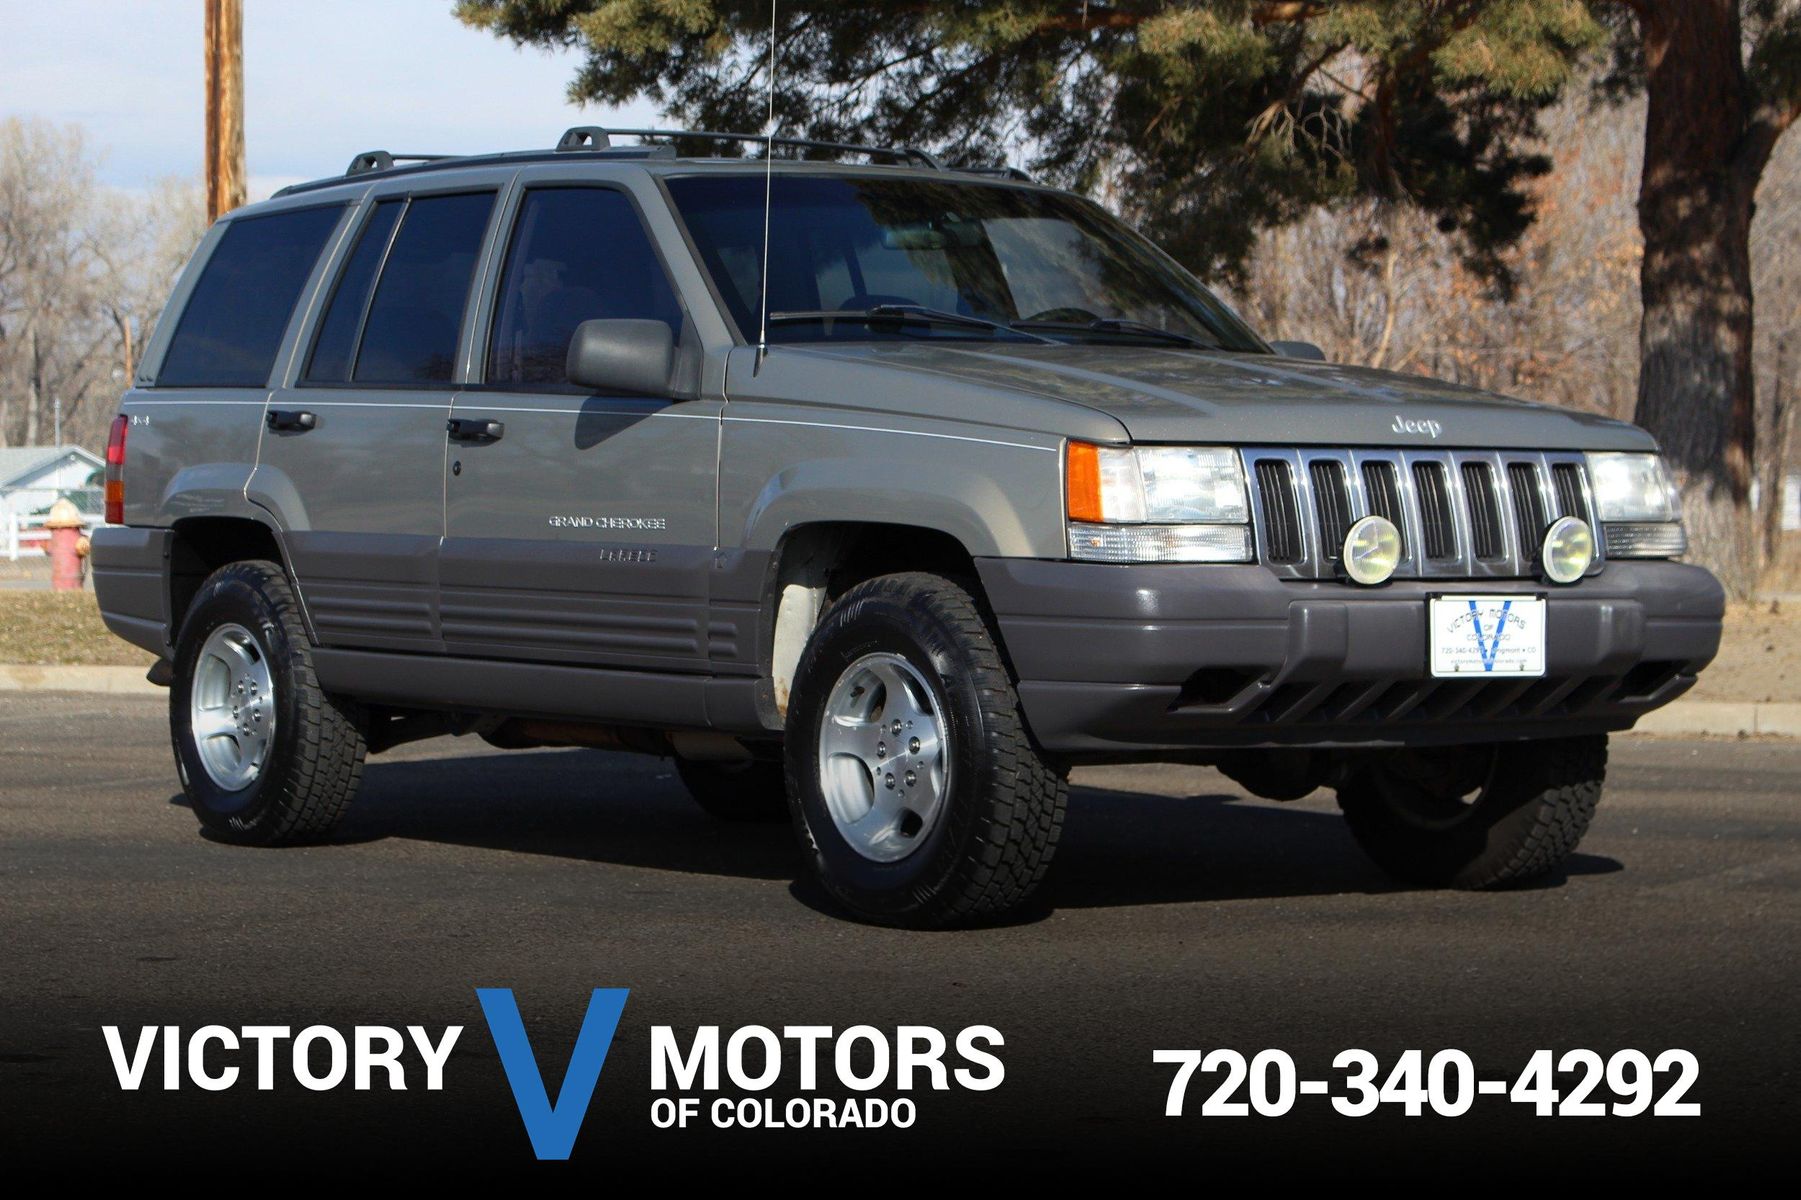 1998 Jeep Grand Cherokee Laredo Victory Motors of Colorado